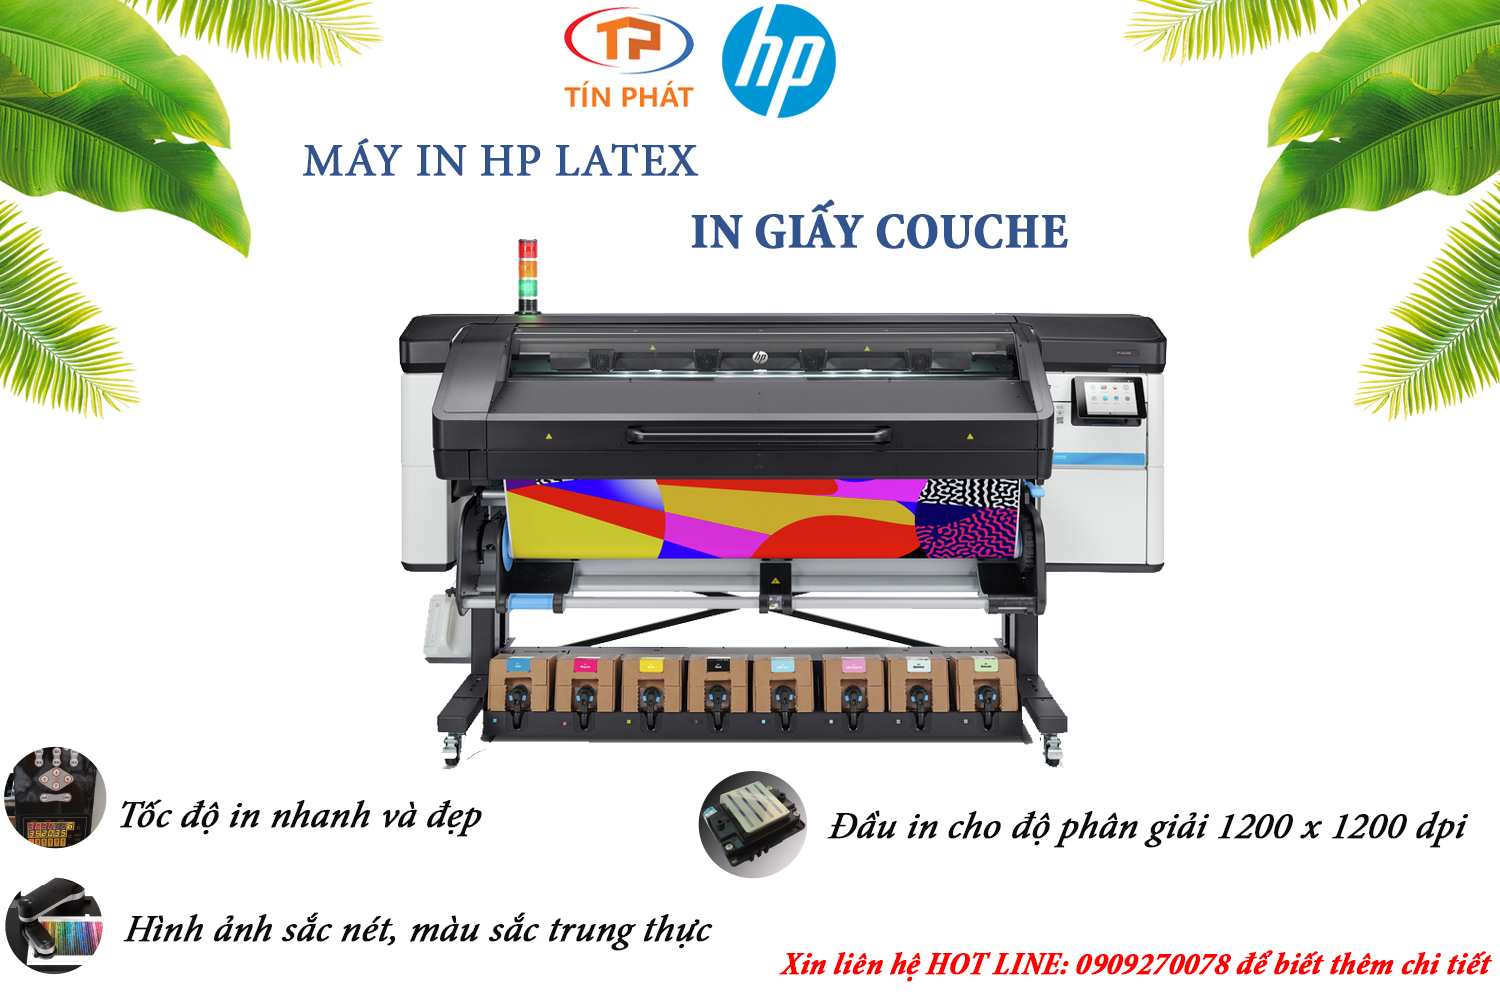 In giấy couche nhanh và đẹp bằng công nghệ HP Latex